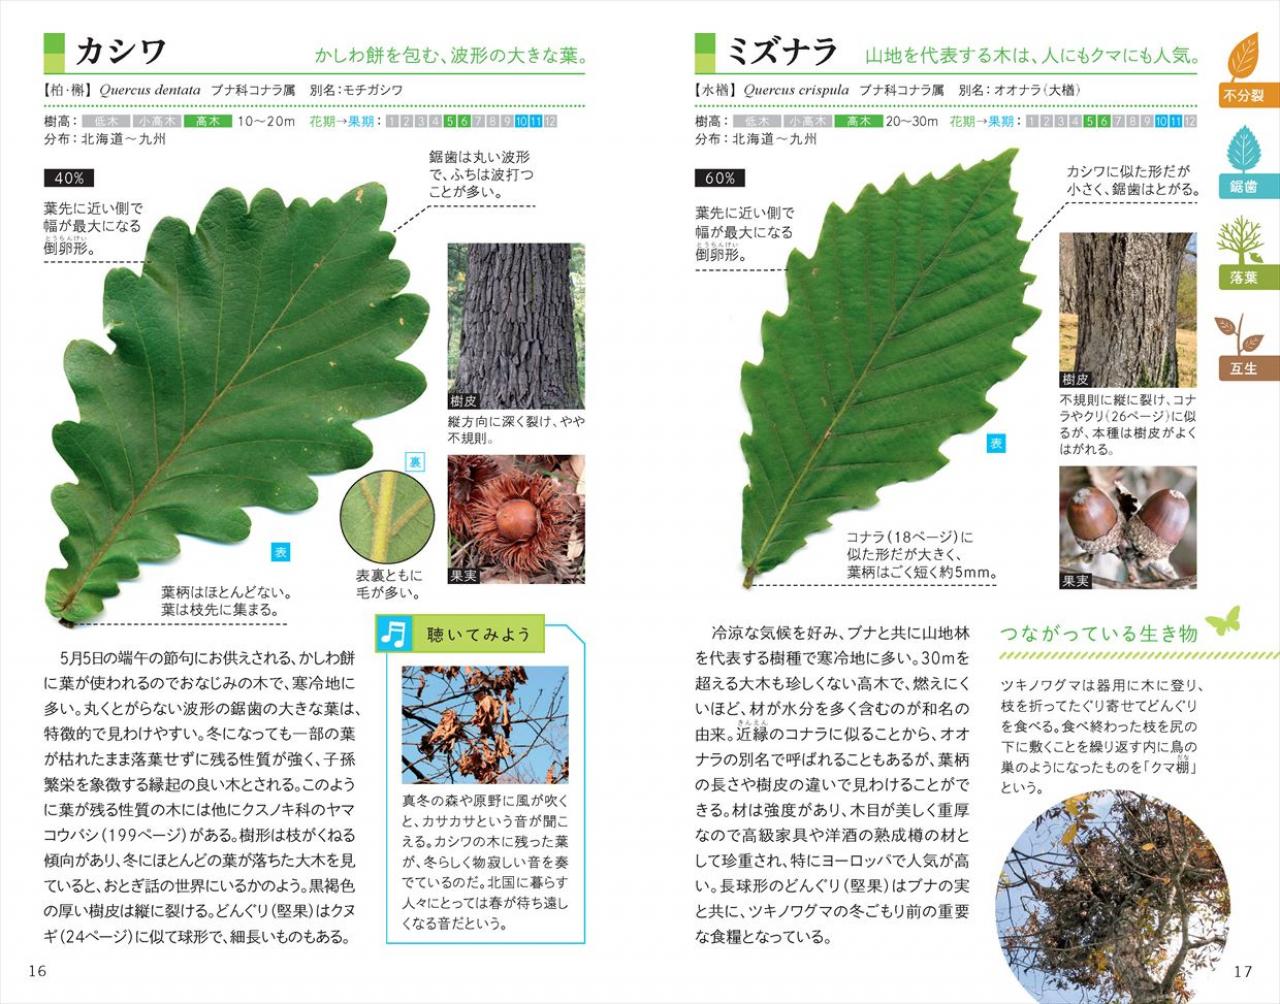 葉っぱで見わけ五感で楽しむ 樹木図鑑 ナツメ社